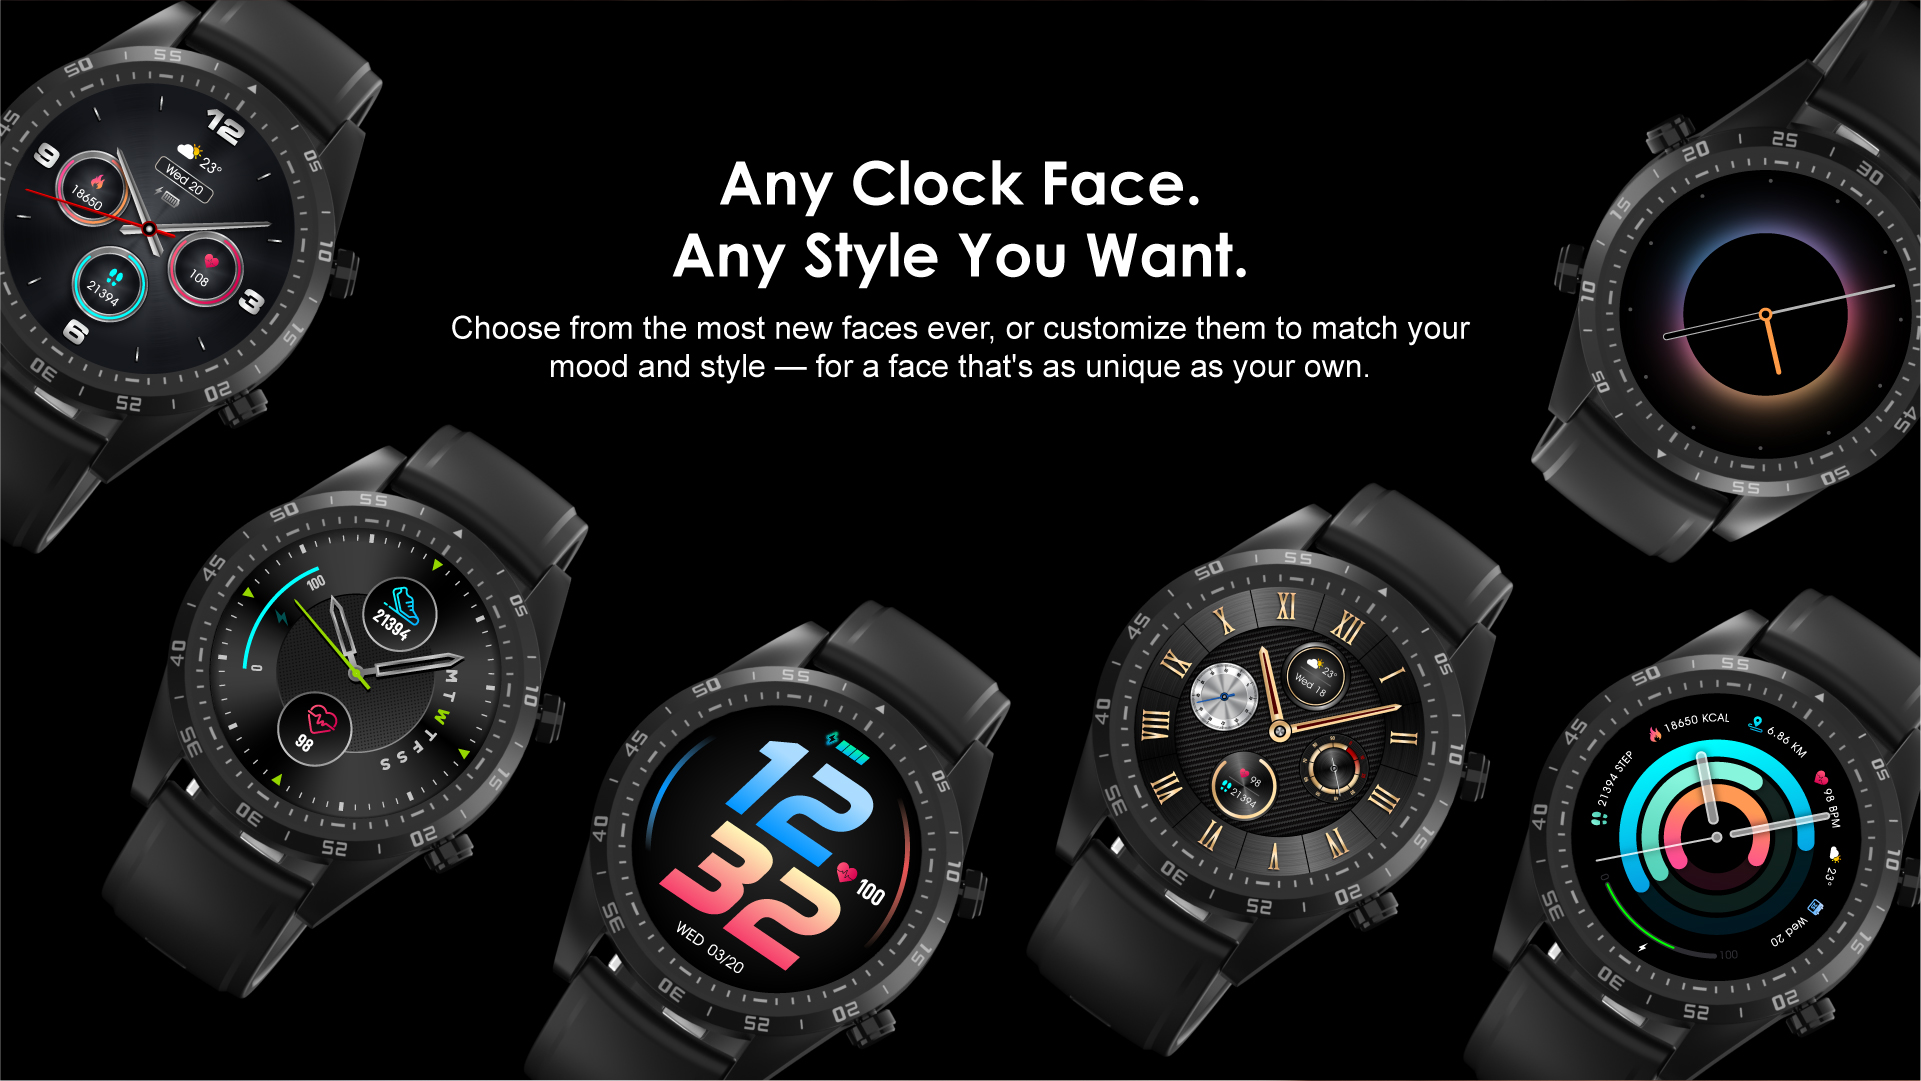 Oraimo Tempo W2 OSW-20 Smart Watch